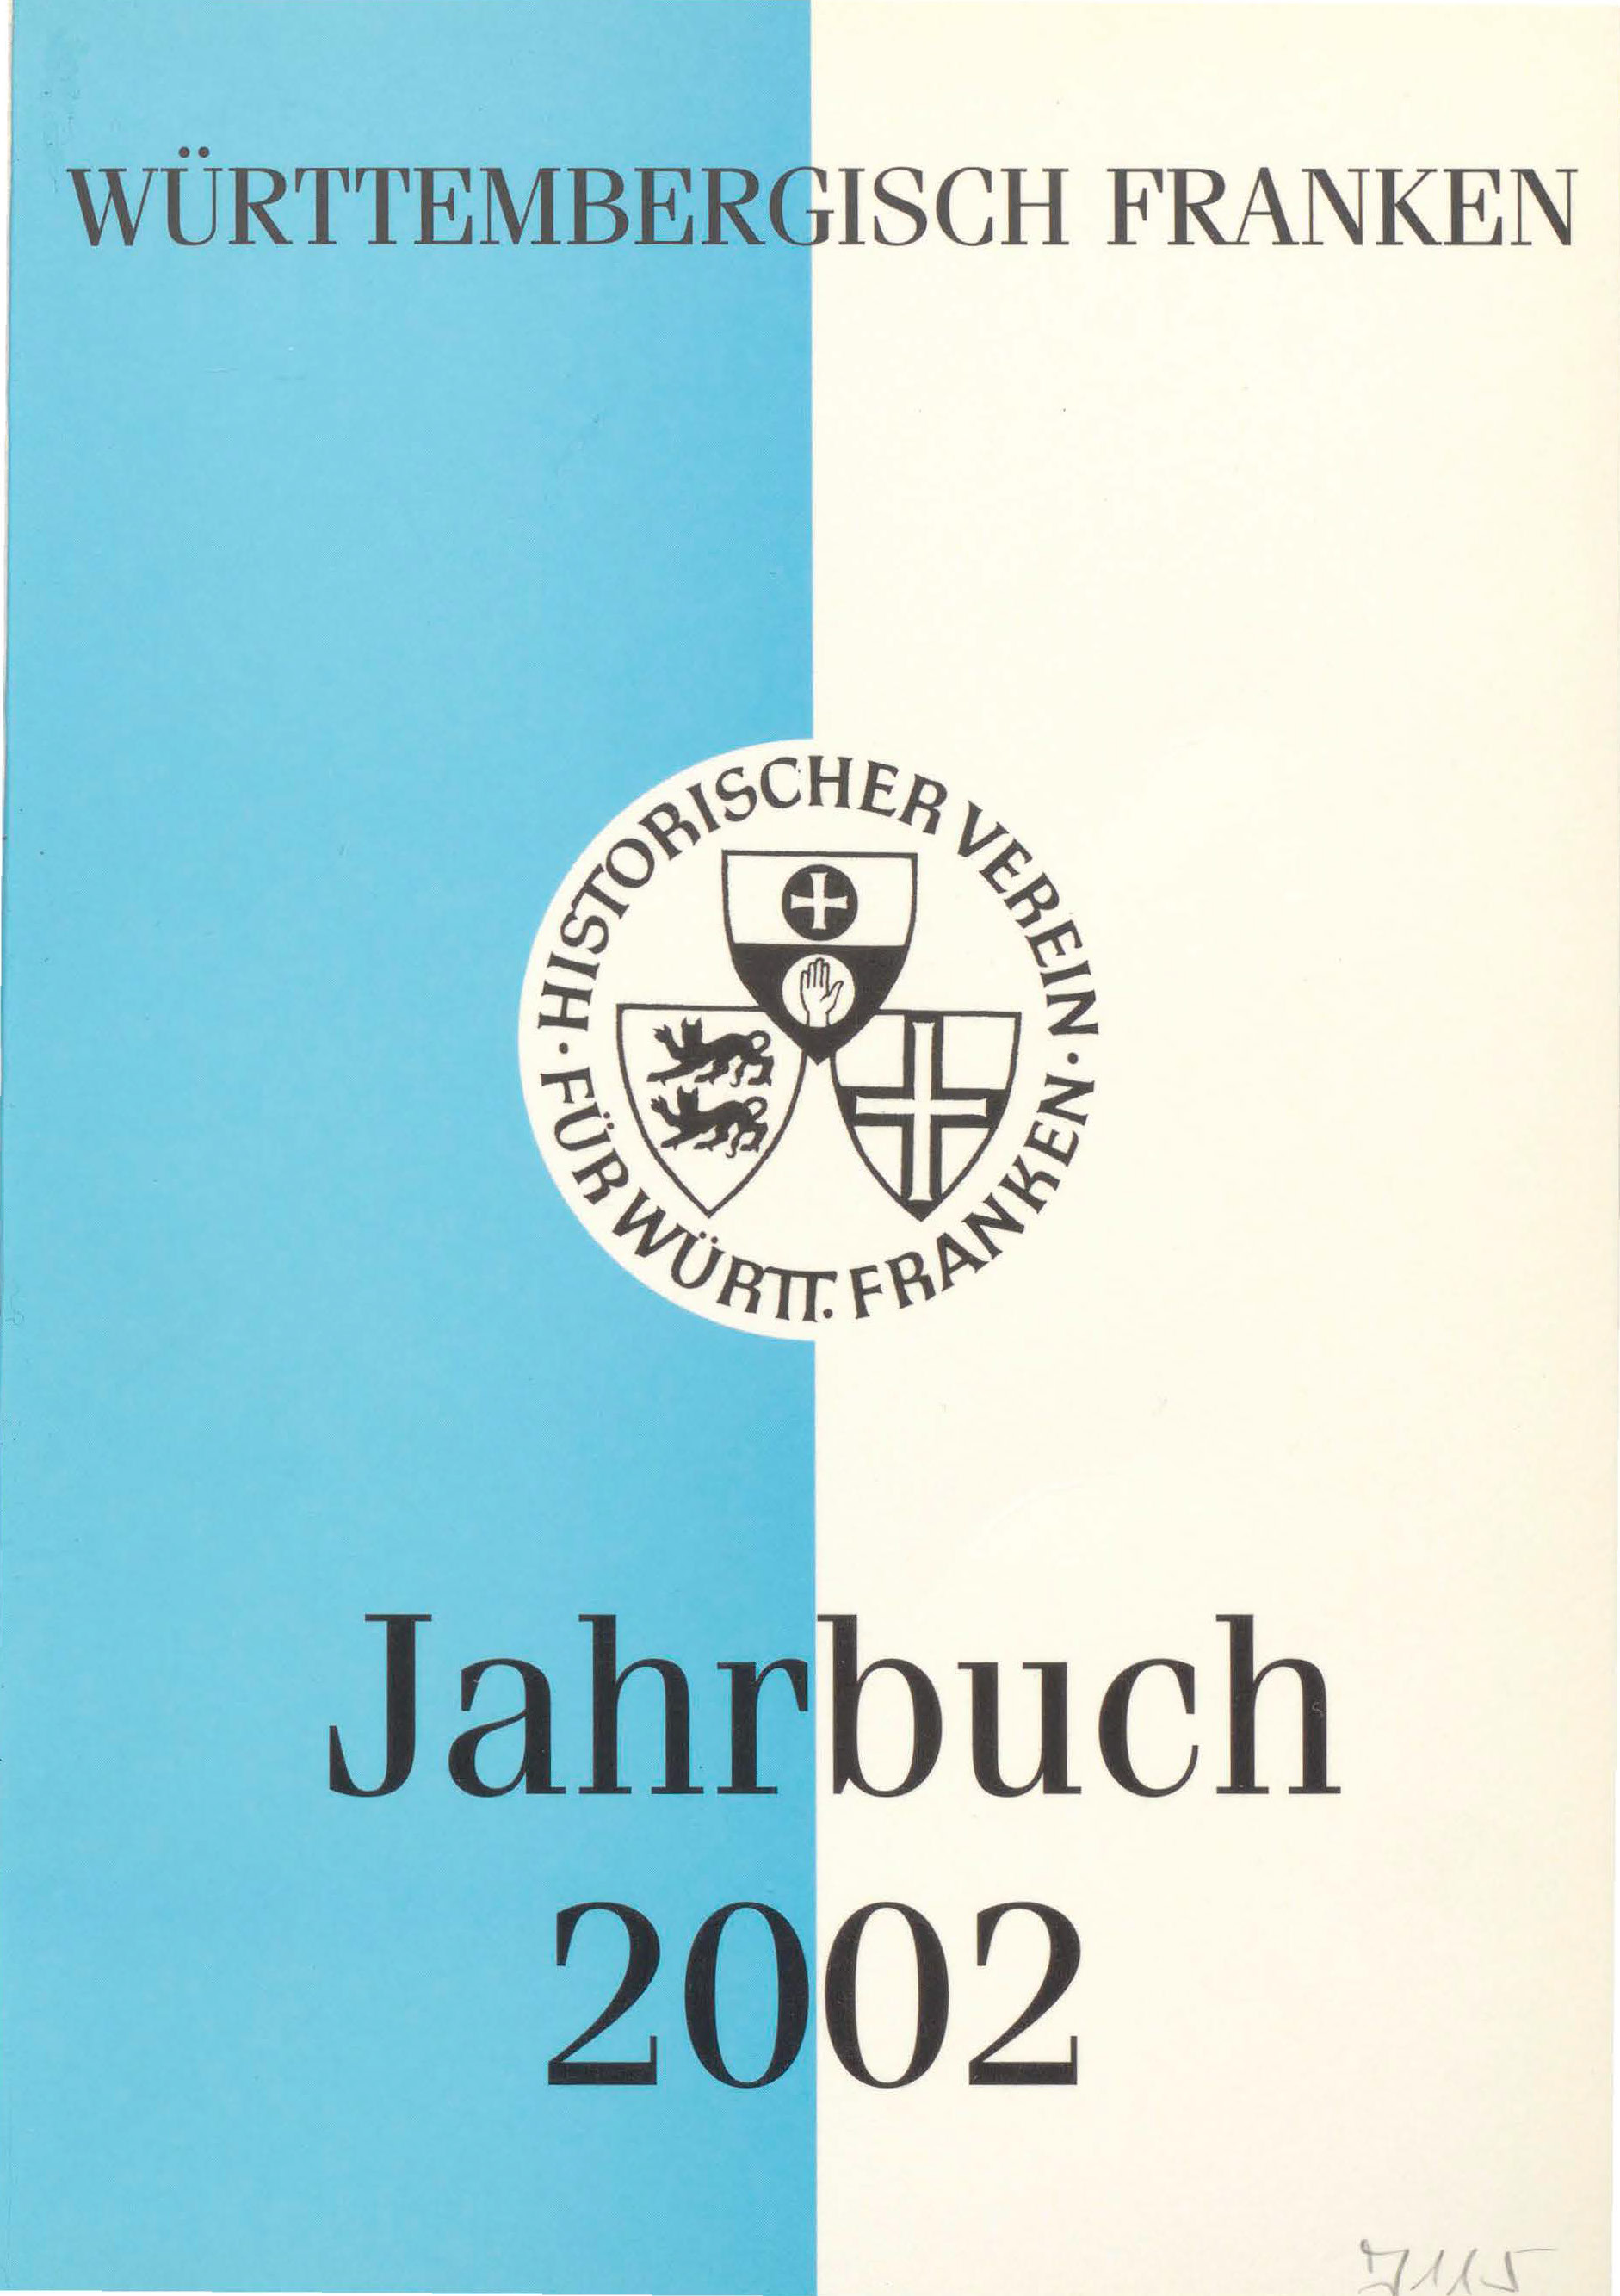                     Ansehen Bd. 86 (2002): Württembergisch Franken
                